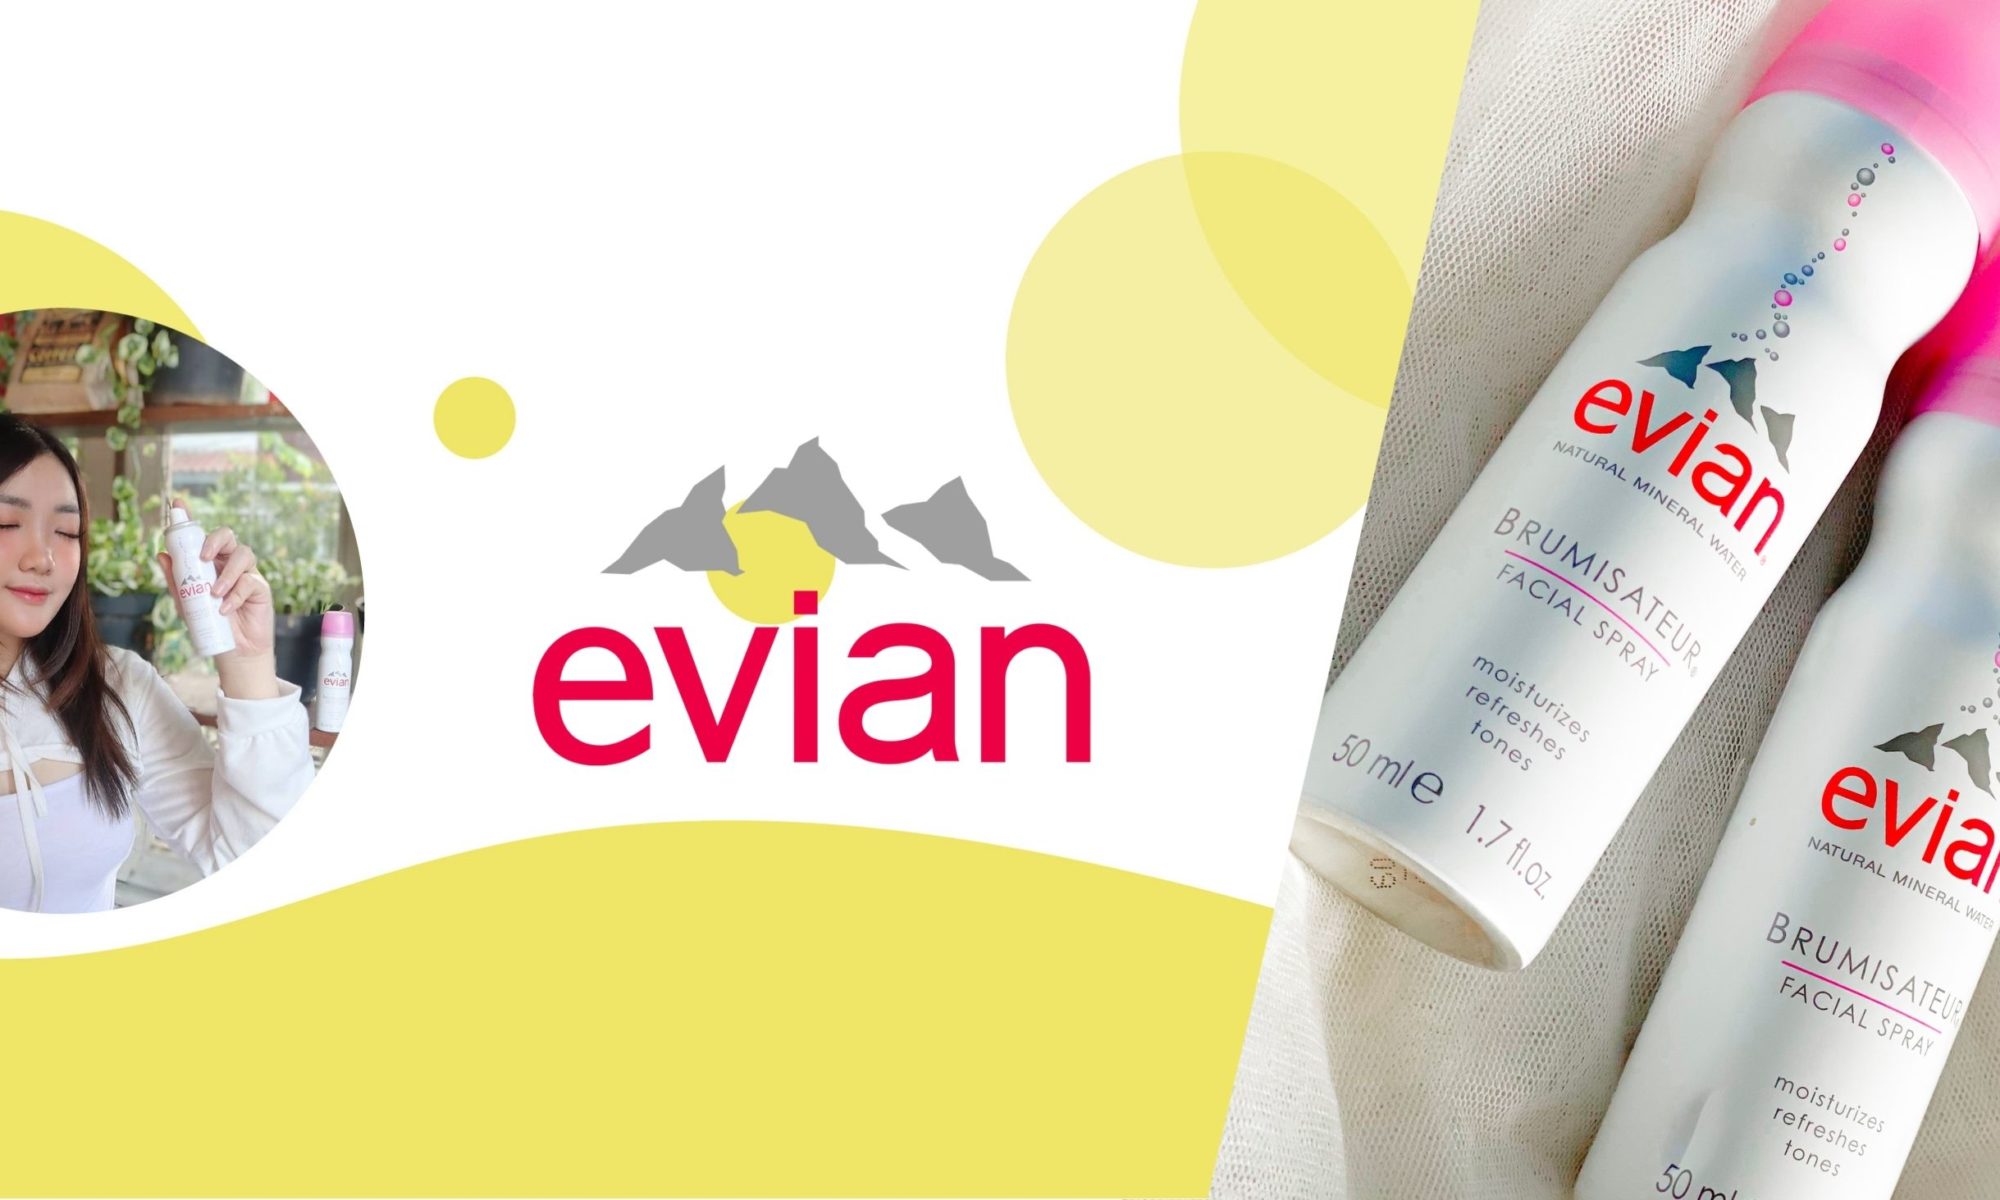 Evian Influencer Marketing Campaign